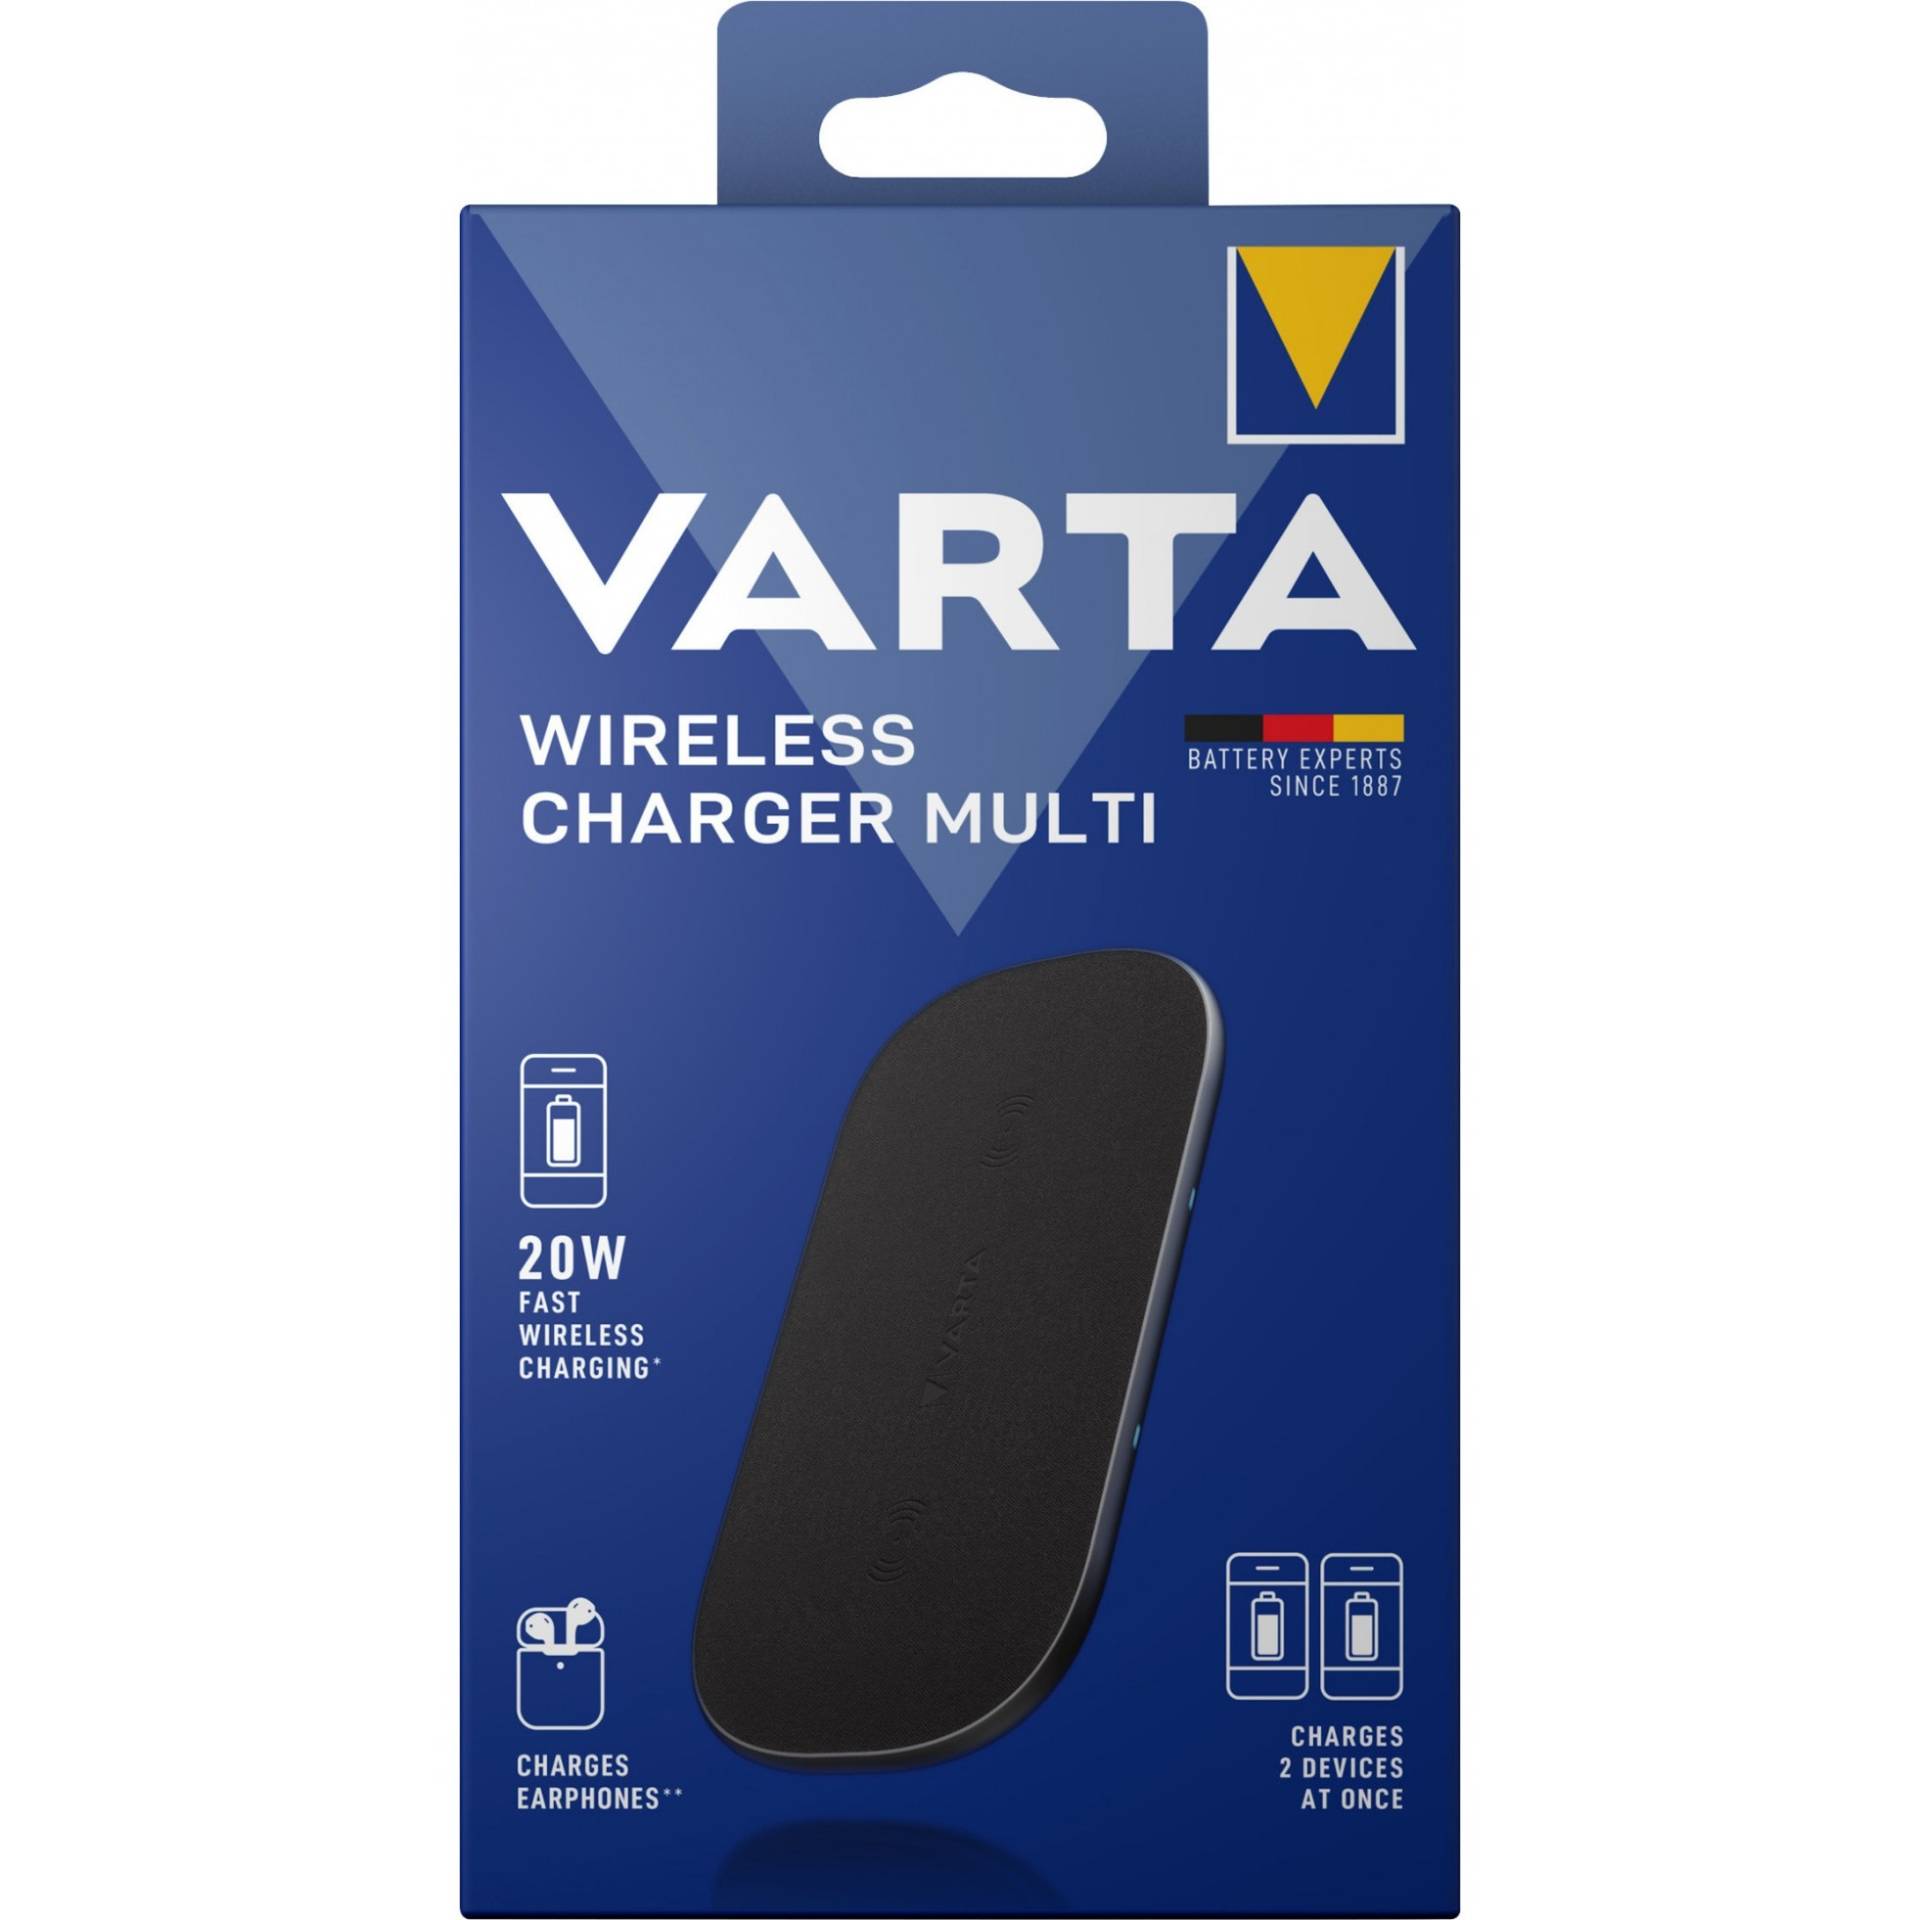 Wireless Charger Multi, Ladegerät von Varta